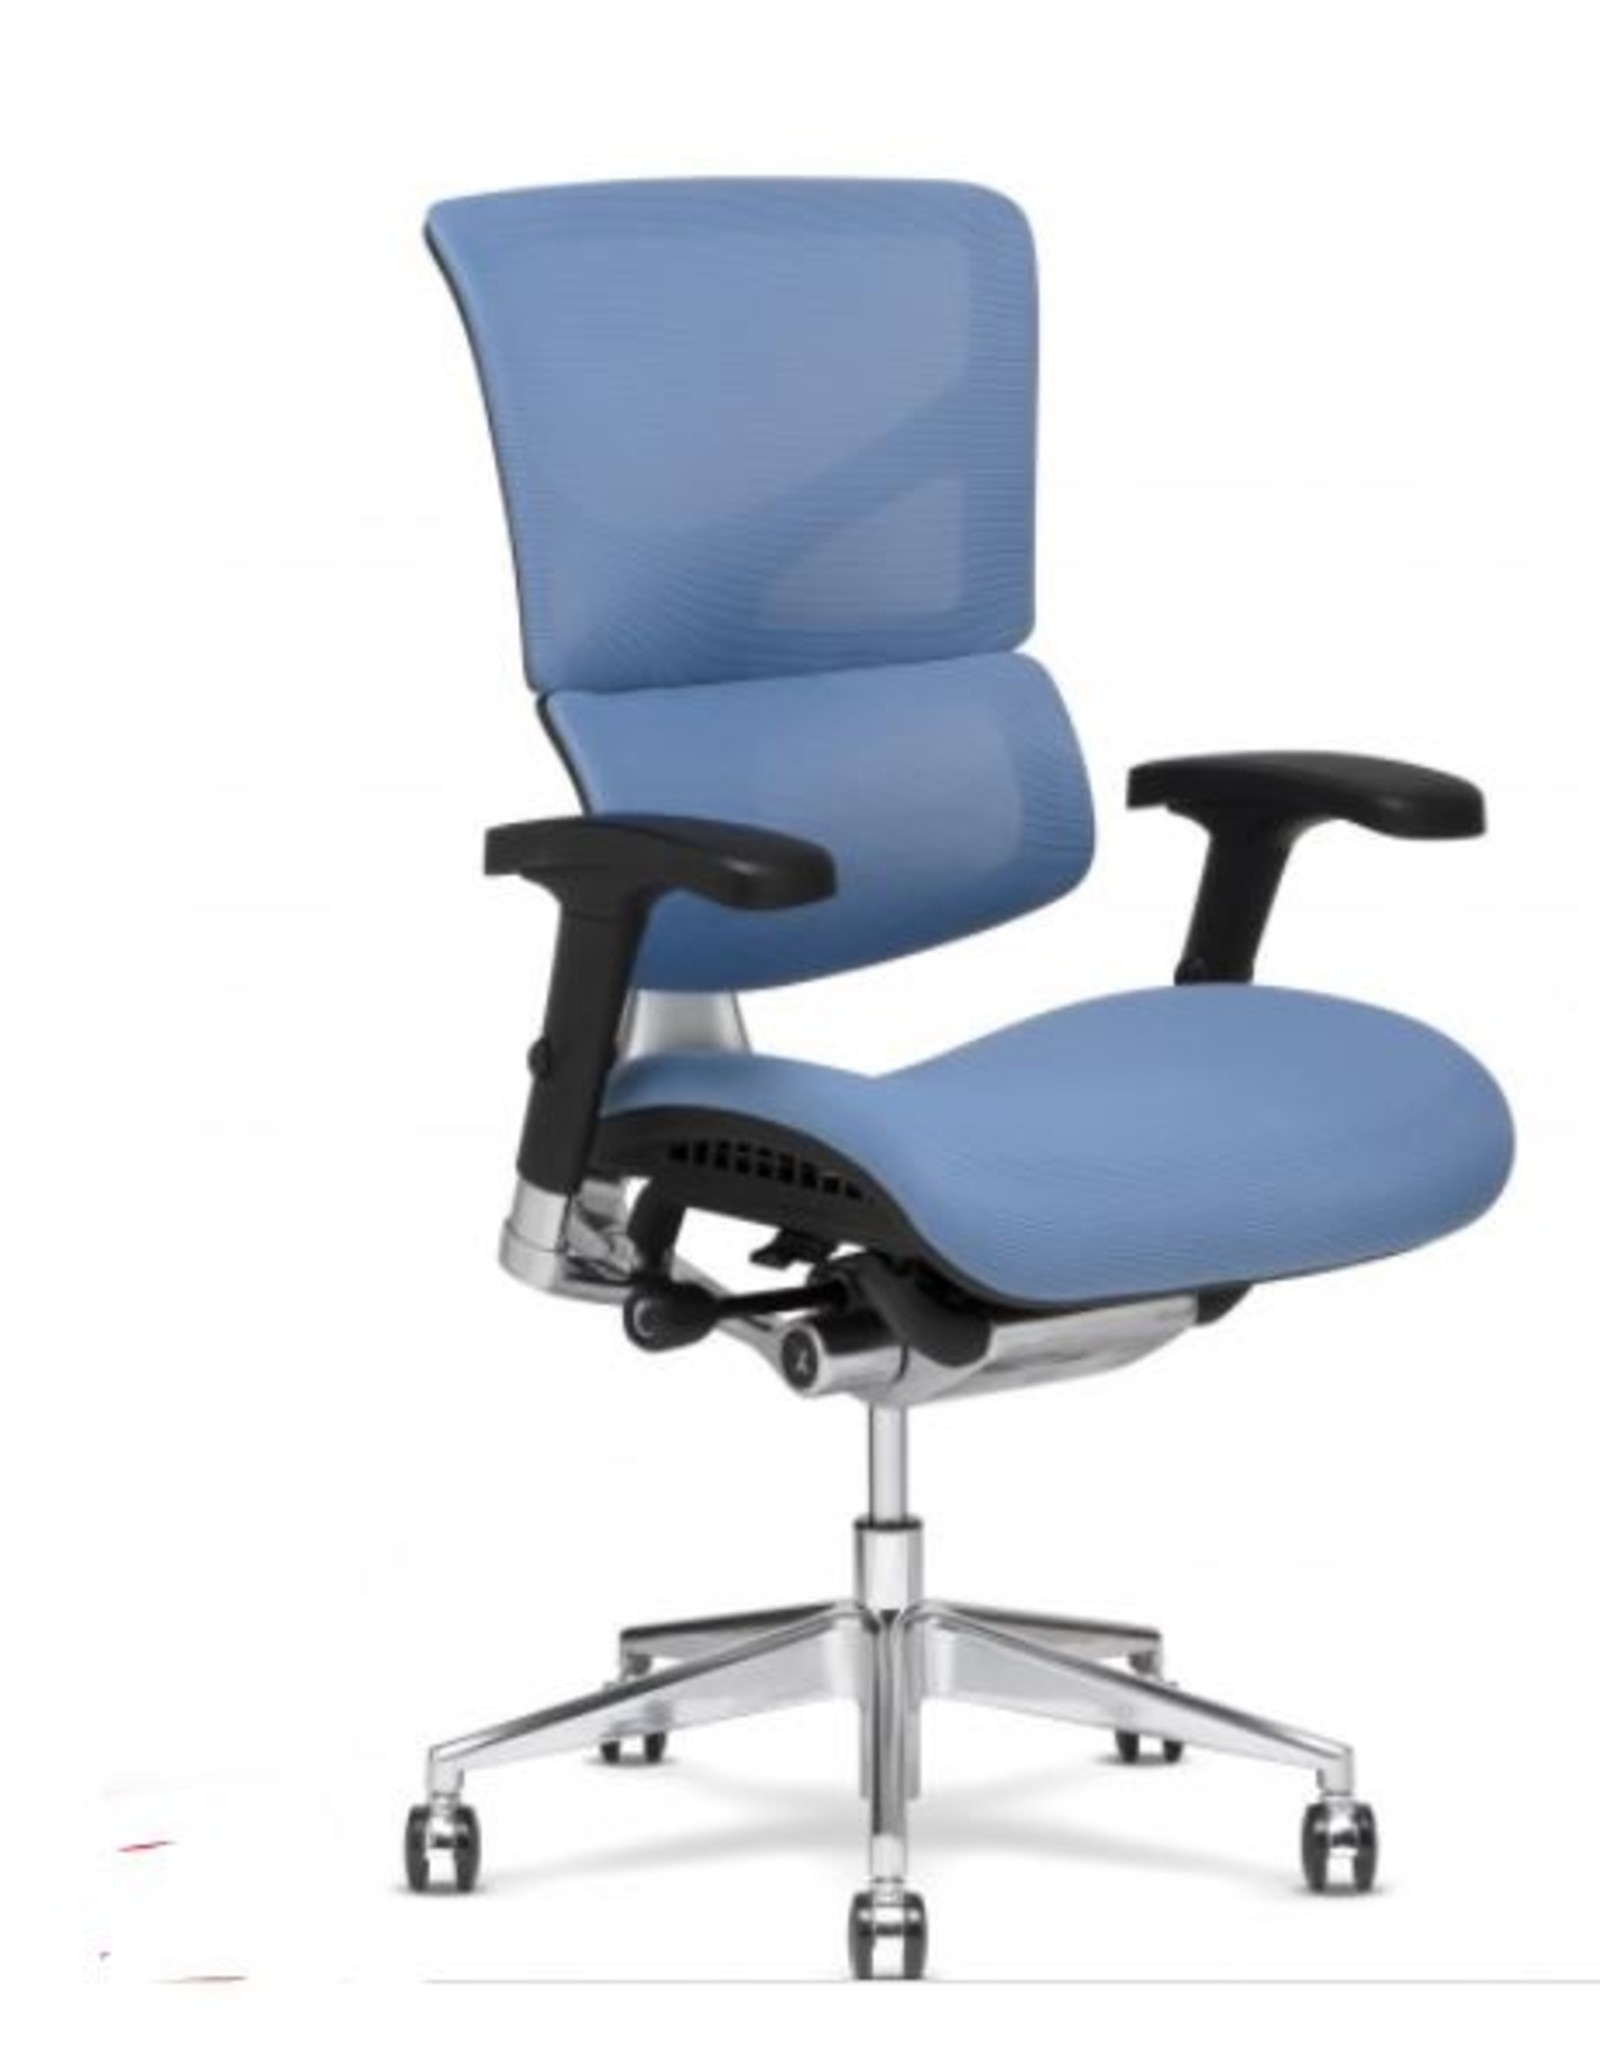 XCHAIR X3 ART Management Chair